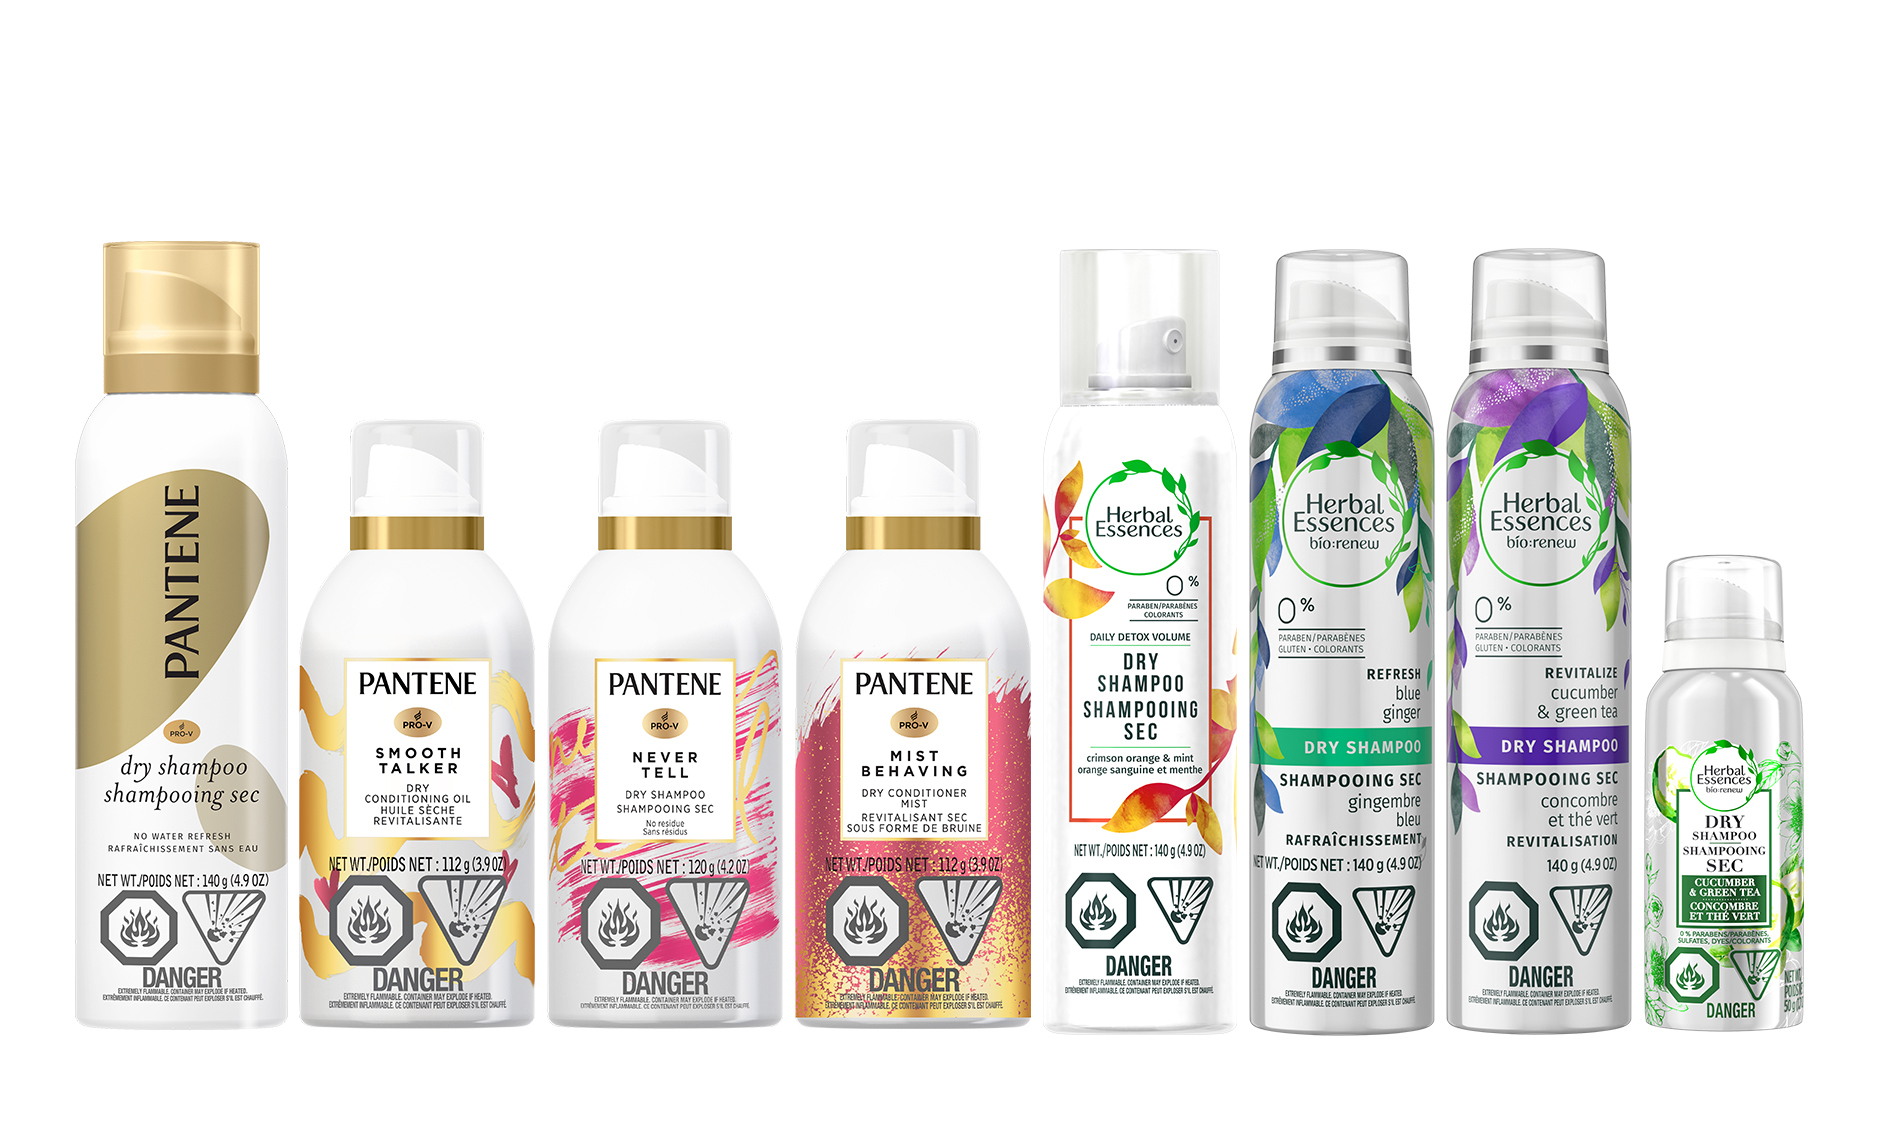 P&G recalls some conditioner, shampoo sprays due to potential